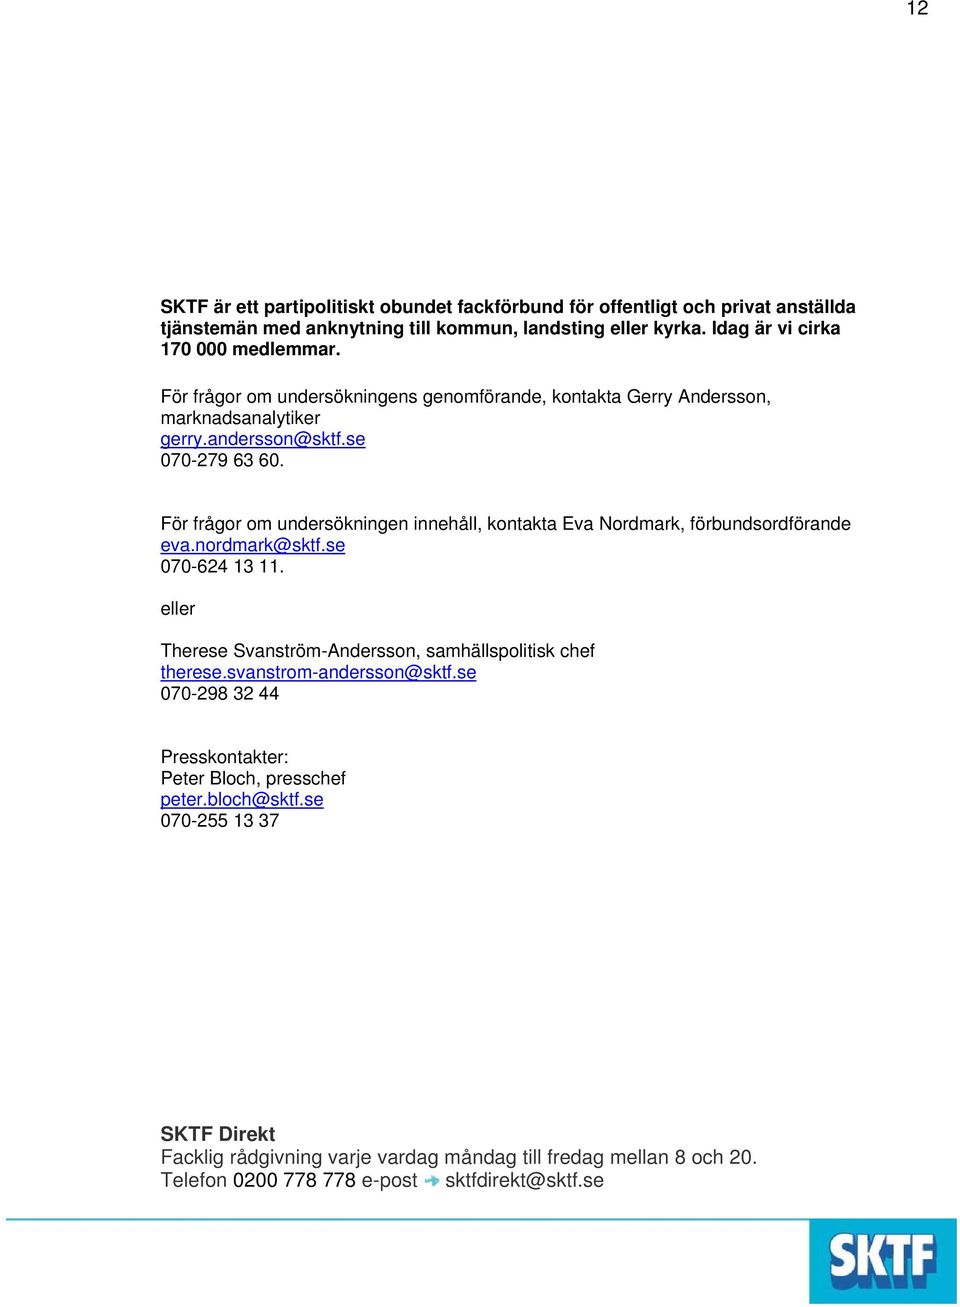 För frågor om undersökningen innehåll, kontakta Eva Nordmark, förbundsordförande eva.nordmark@sktf.se 7-624 13 11.